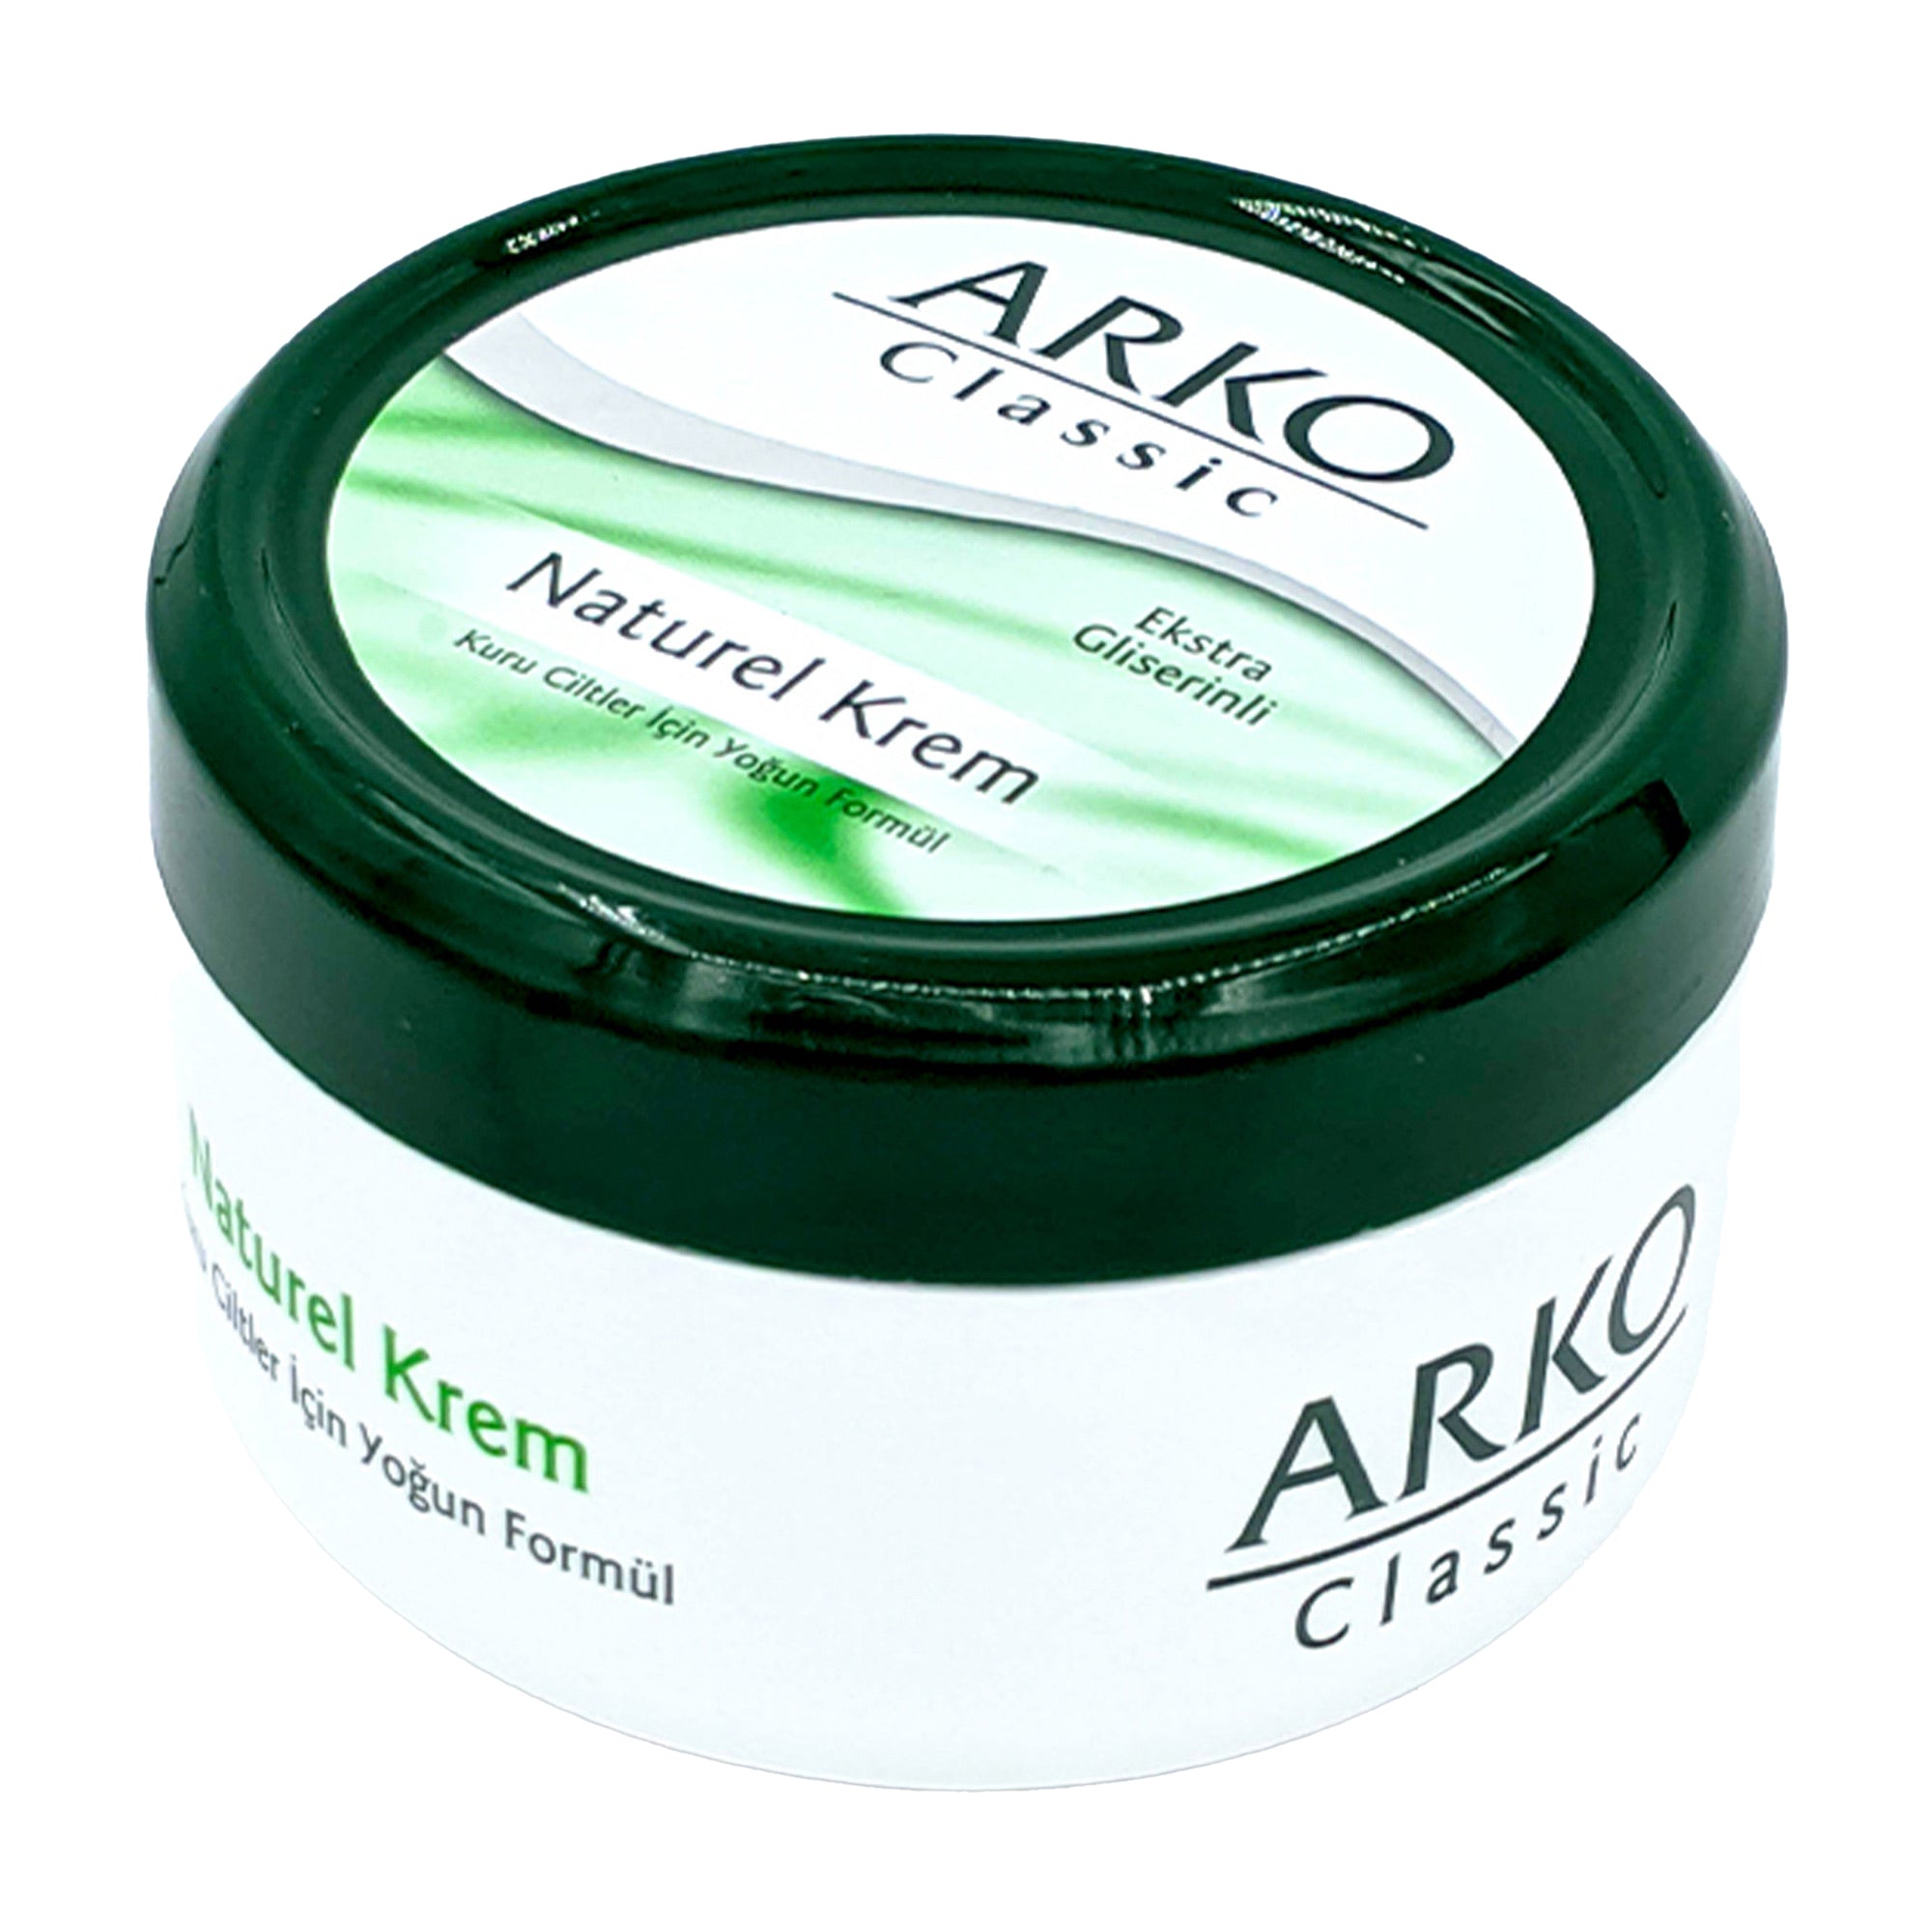 Arko - Classic Natural Cream 300ml - Eson Direct